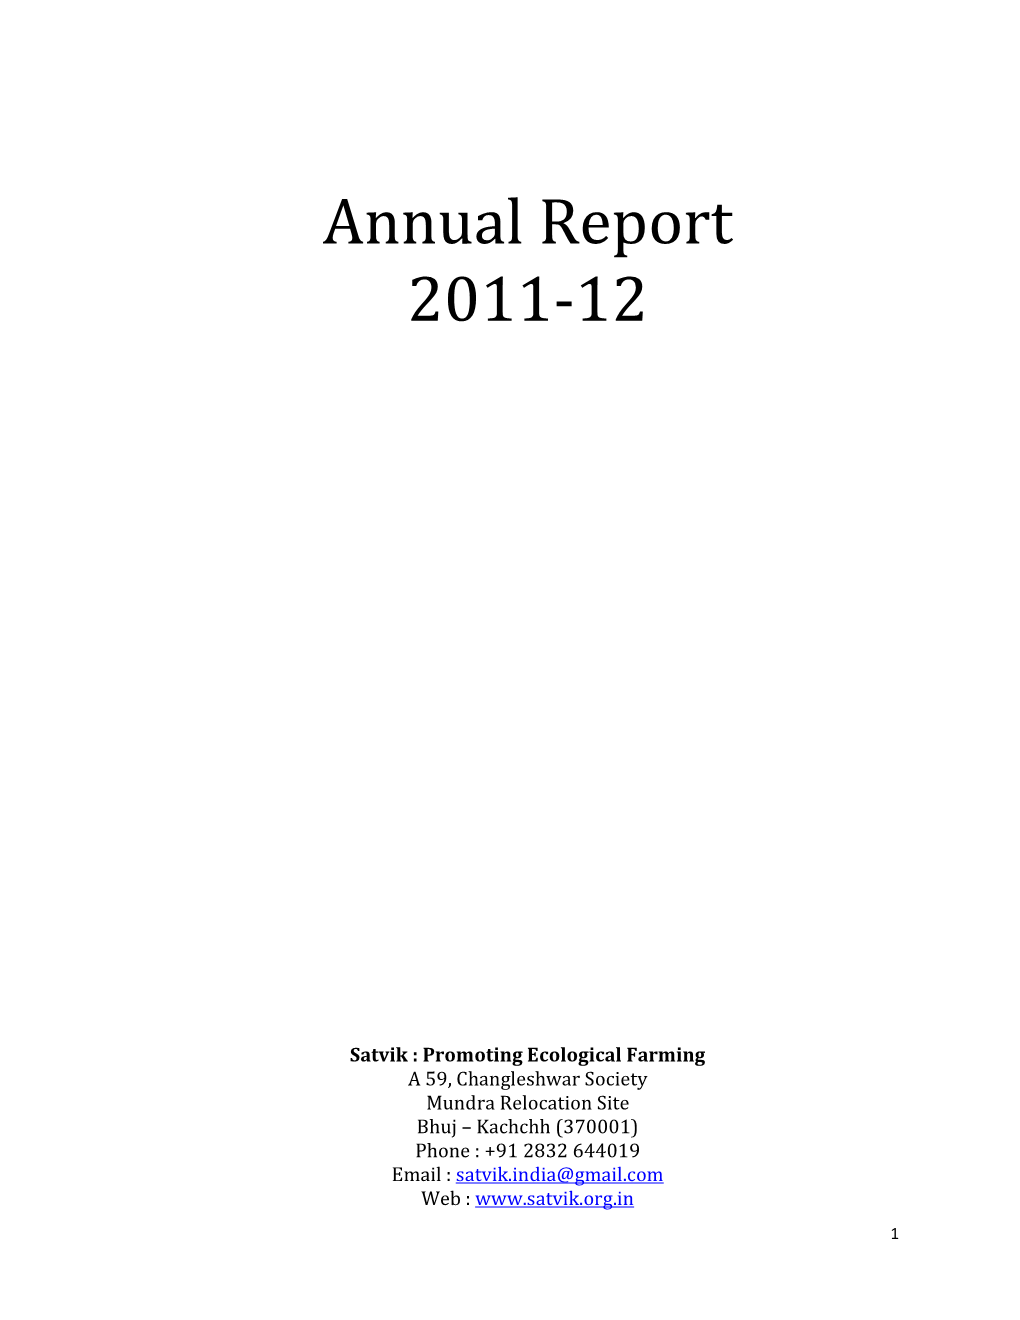 Satvik Annual Report 2011-12